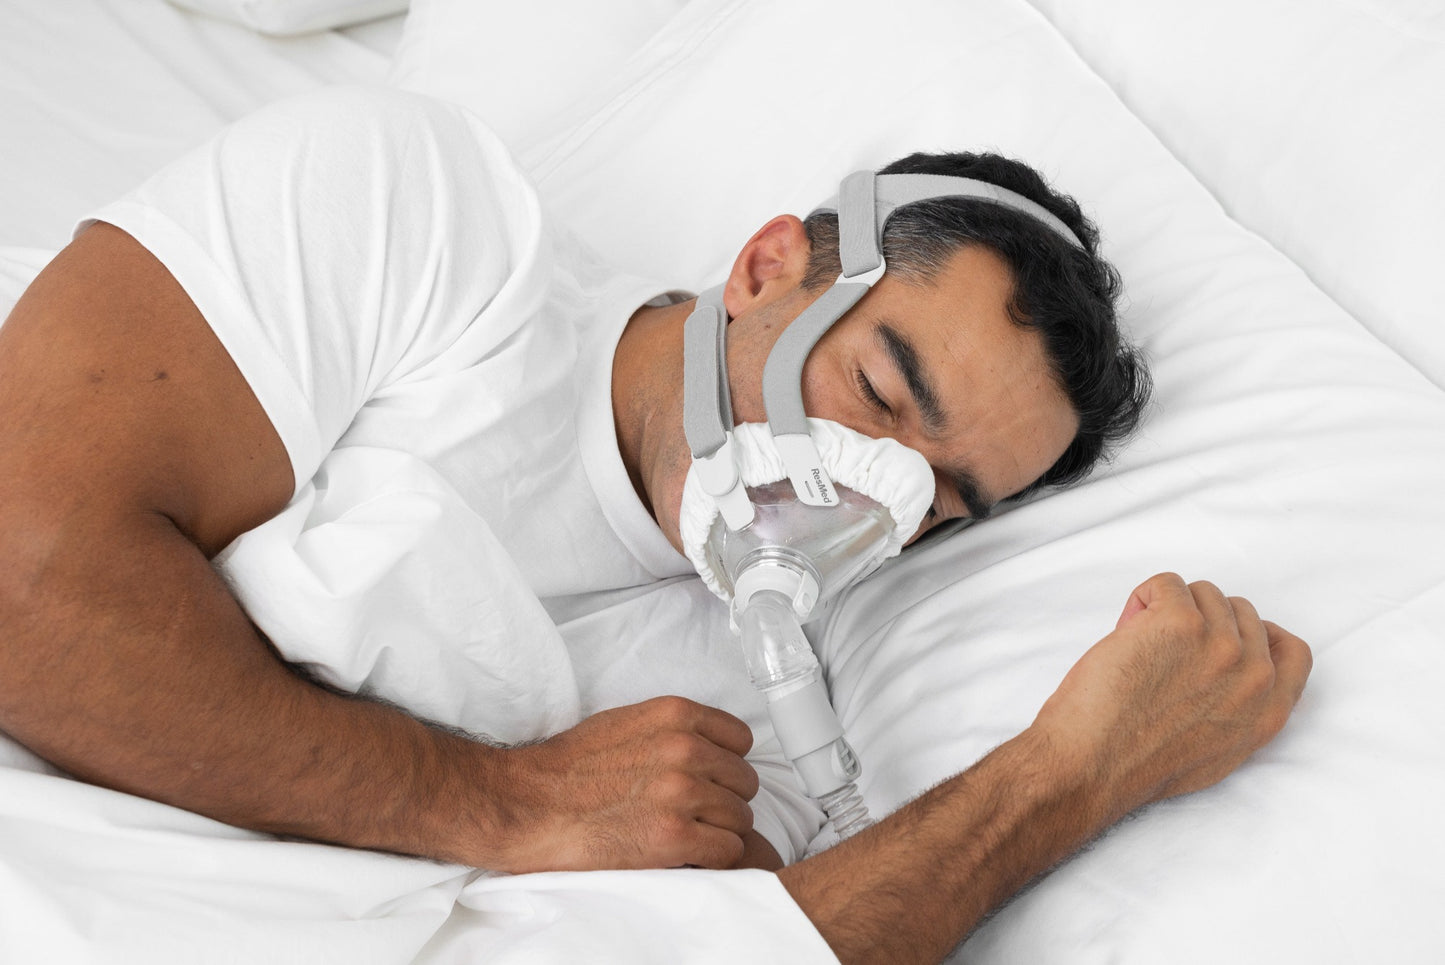 Man wearing mask liner while sleeping.